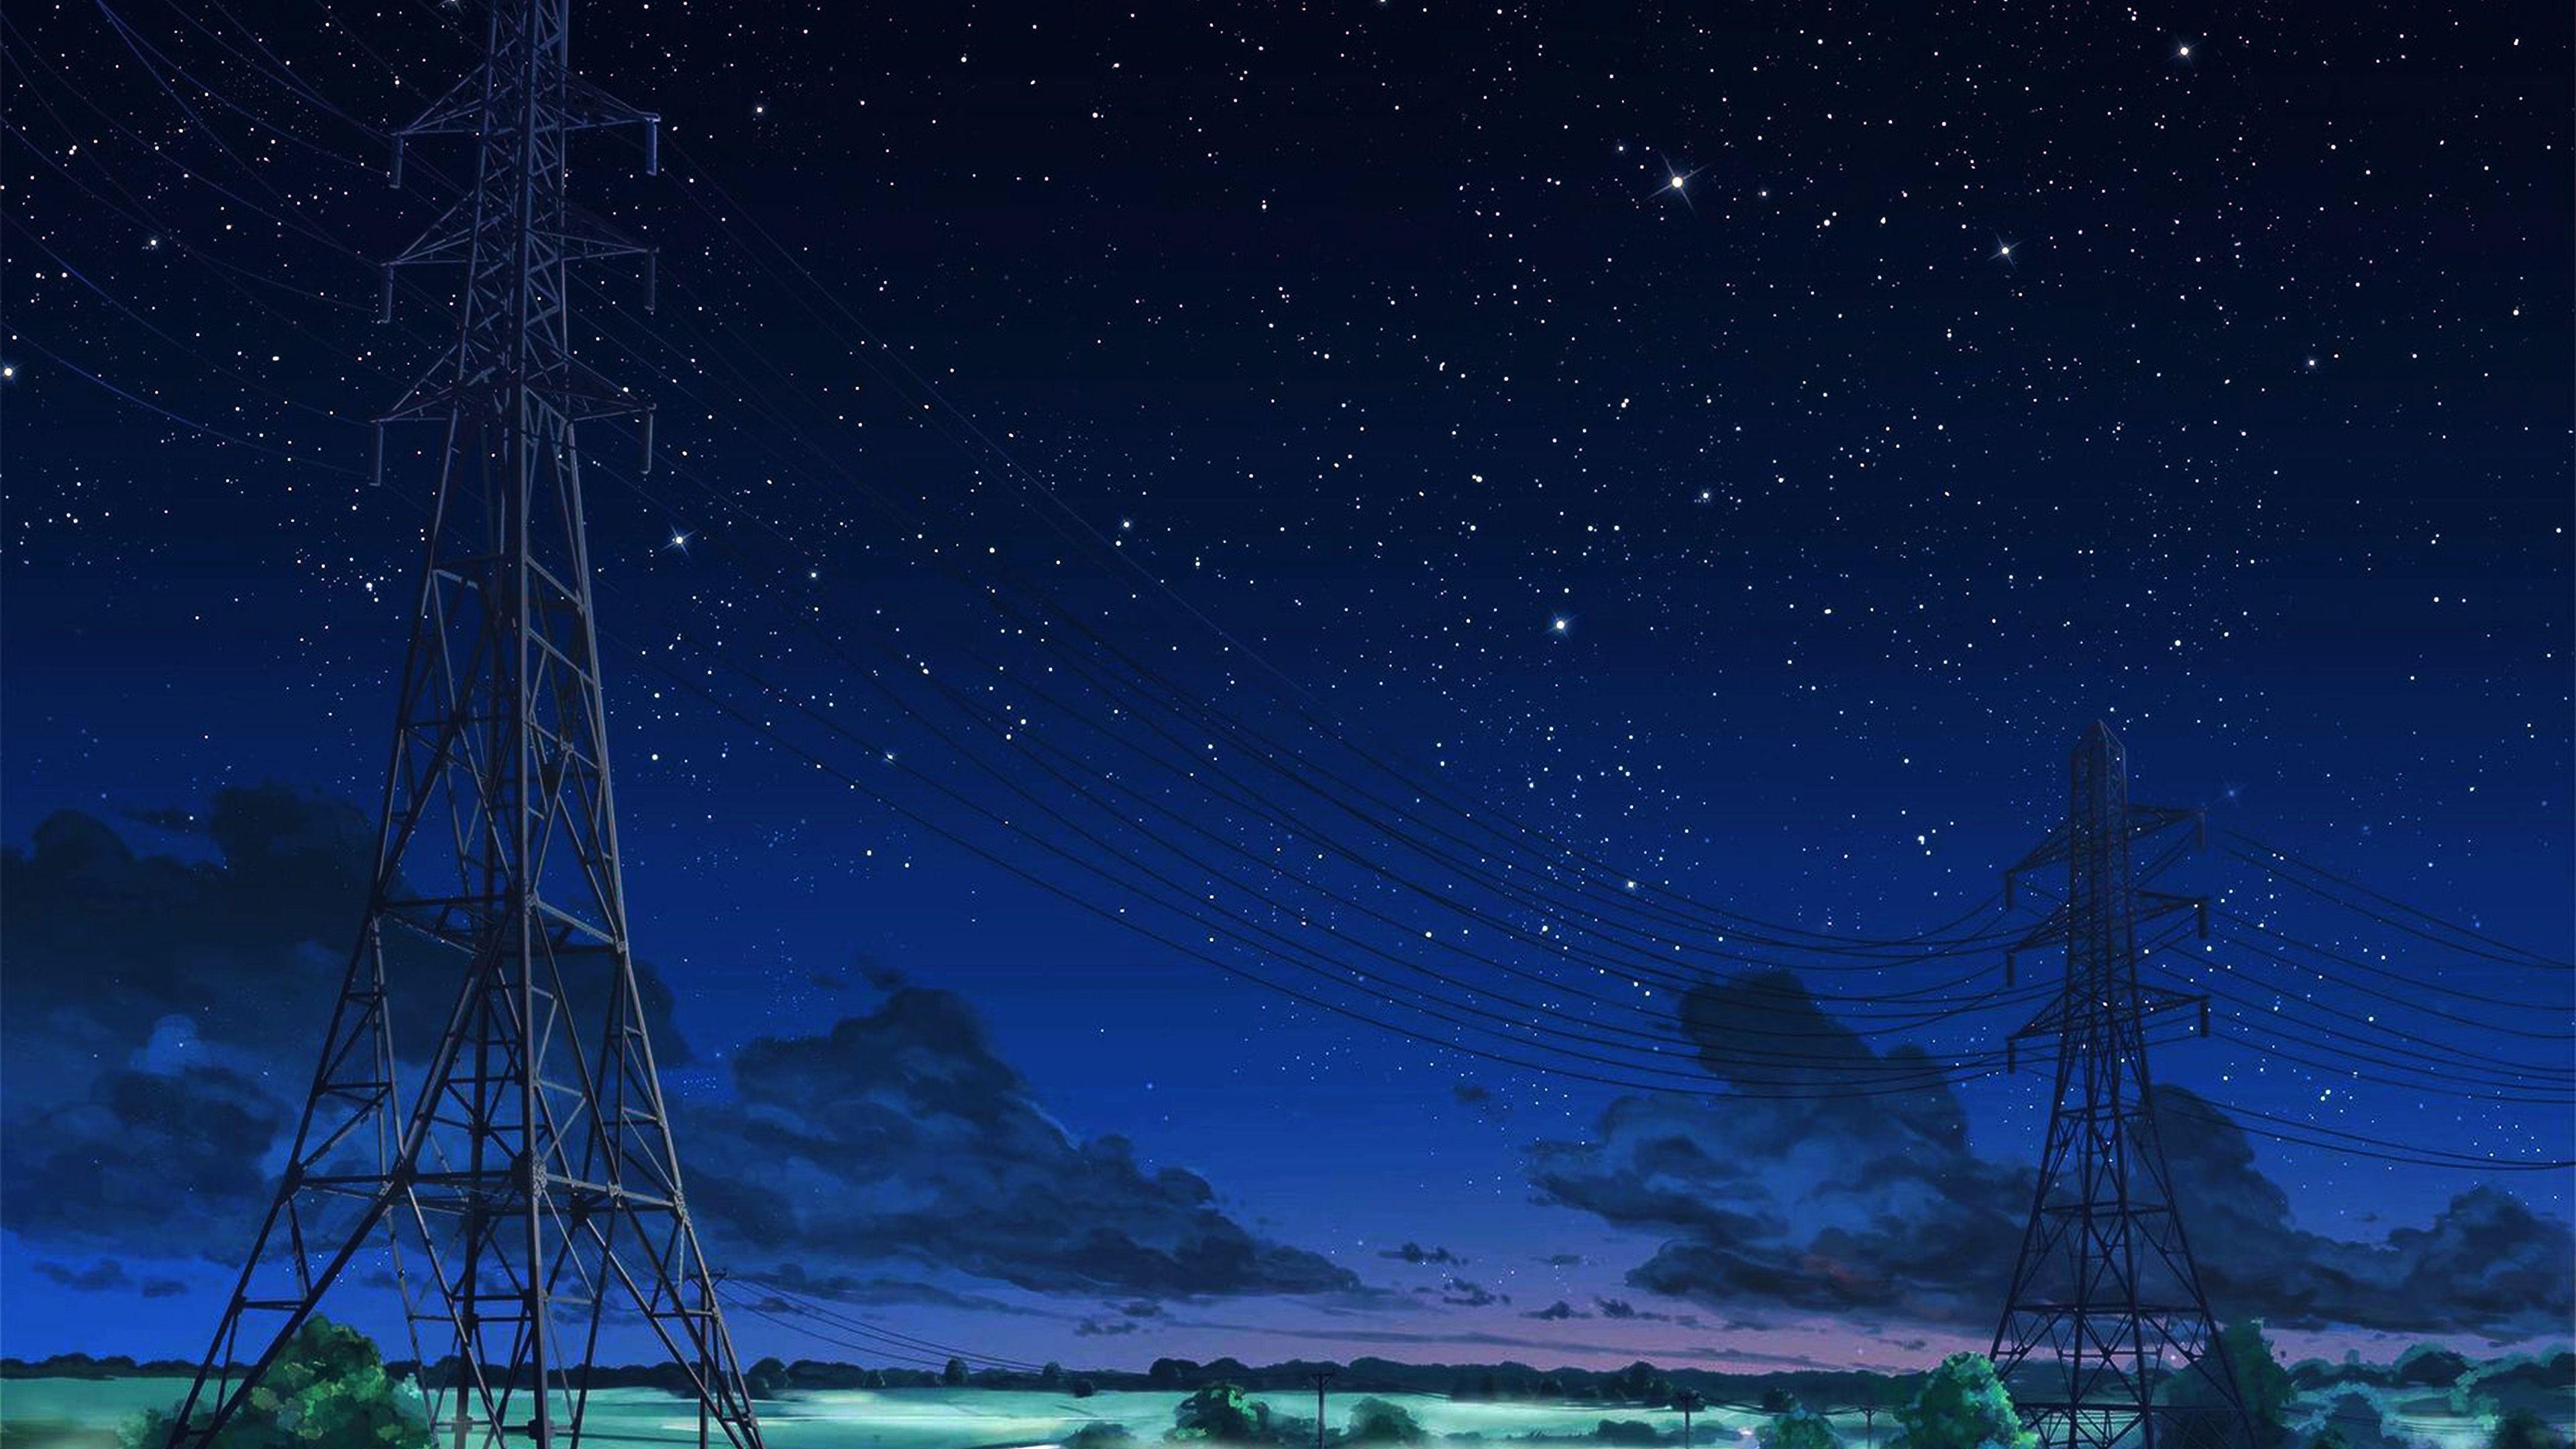 Hình nền 3840x2160 cho máy tính để bàn, laptop.  arseniy chebynkin bầu trời đêm ngôi sao màu xanh minh họa nghệ thuật anime bóng tối